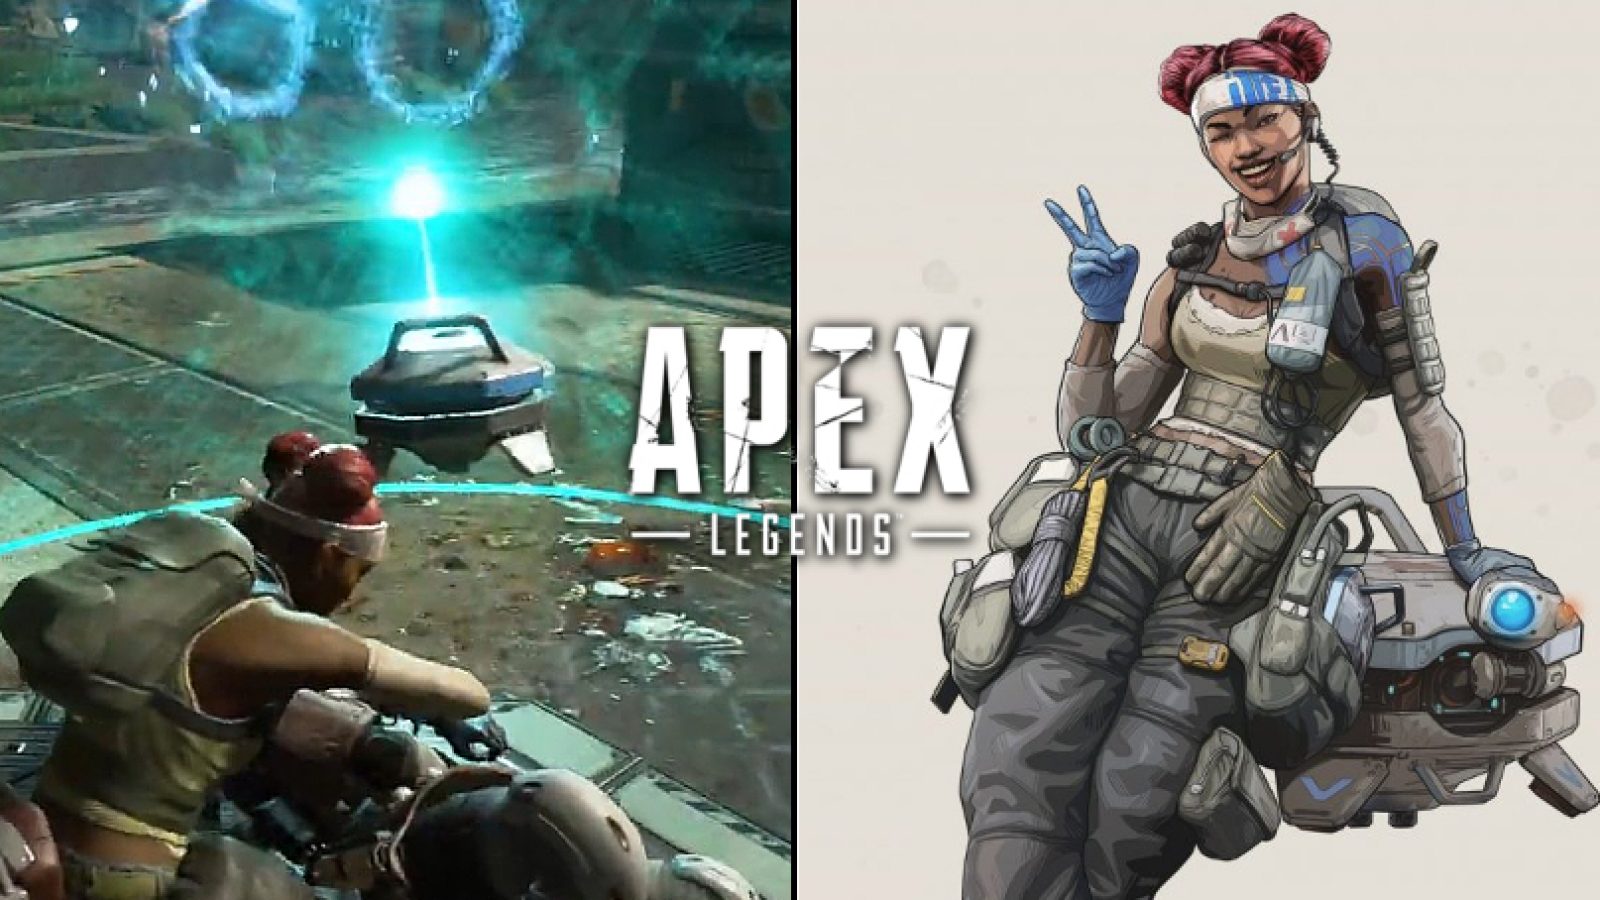 Apex Legends : Mẹo vận dụng tấm khiên của Lifeline hiệu quả để cứu đồng đội